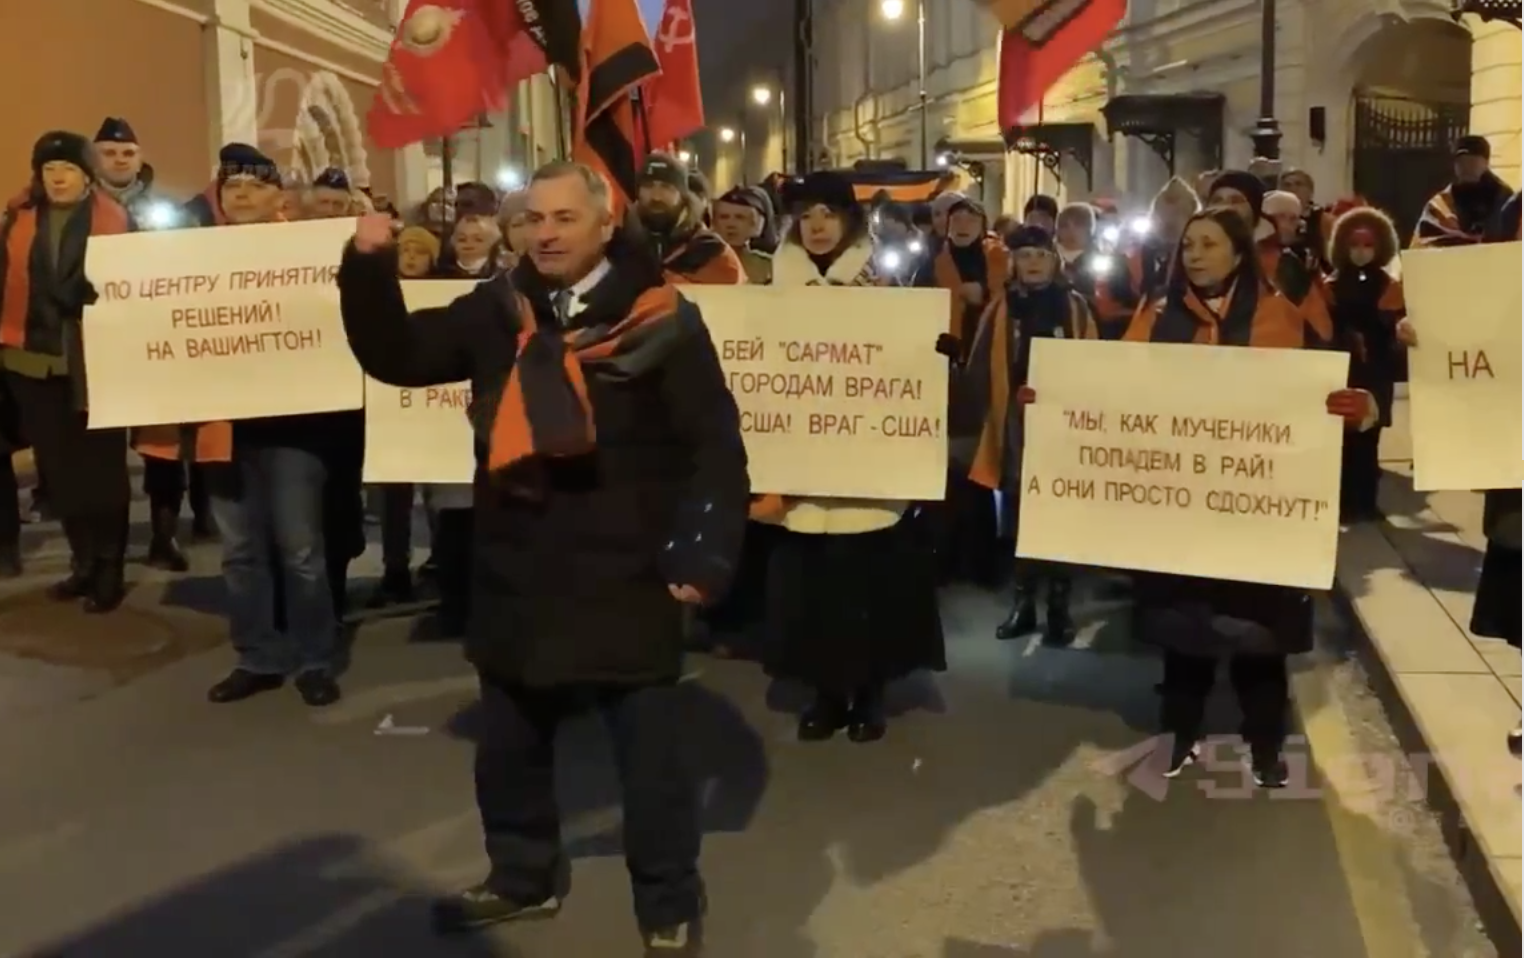 НОД  –  обычные идиоты или все-таки  креатура  сатанистов?  По Москве прошел марш с призывом нанести ядерный удар по США.   ВИДЕО